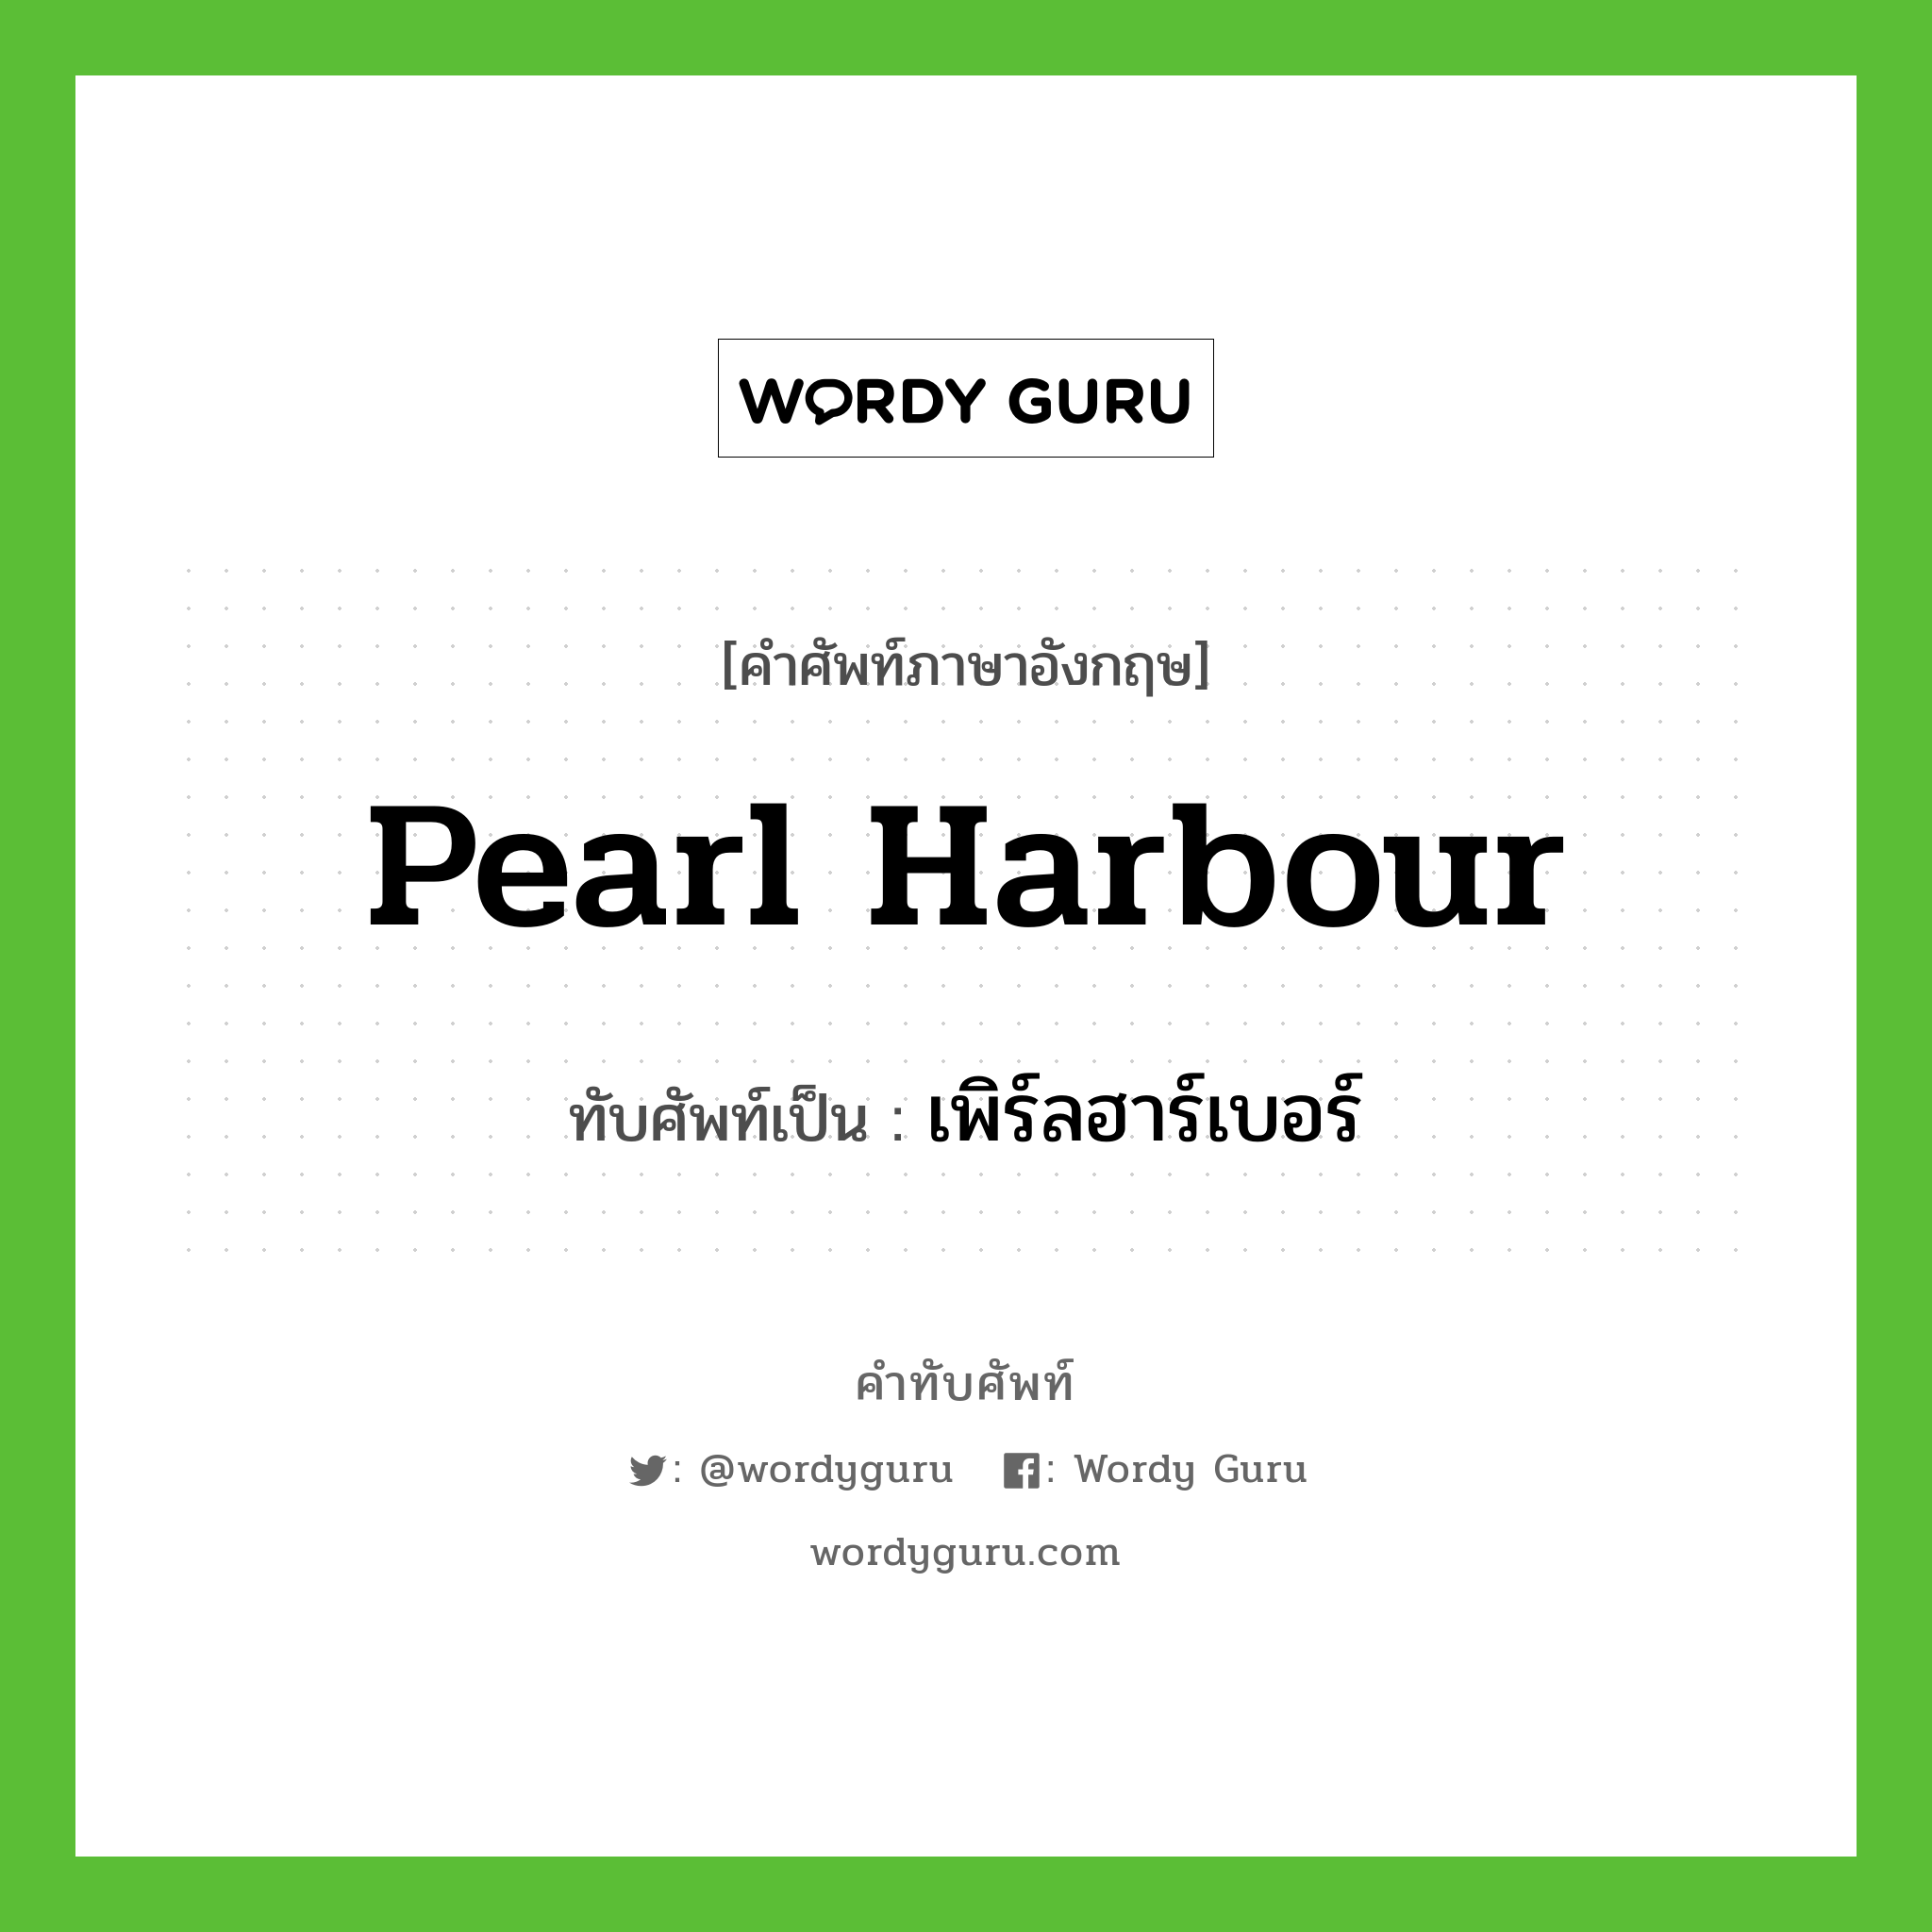 Pearl Harbour เขียนเป็นคำไทยว่าอะไร?, คำศัพท์ภาษาอังกฤษ Pearl Harbour ทับศัพท์เป็น เพิร์ลฮาร์เบอร์